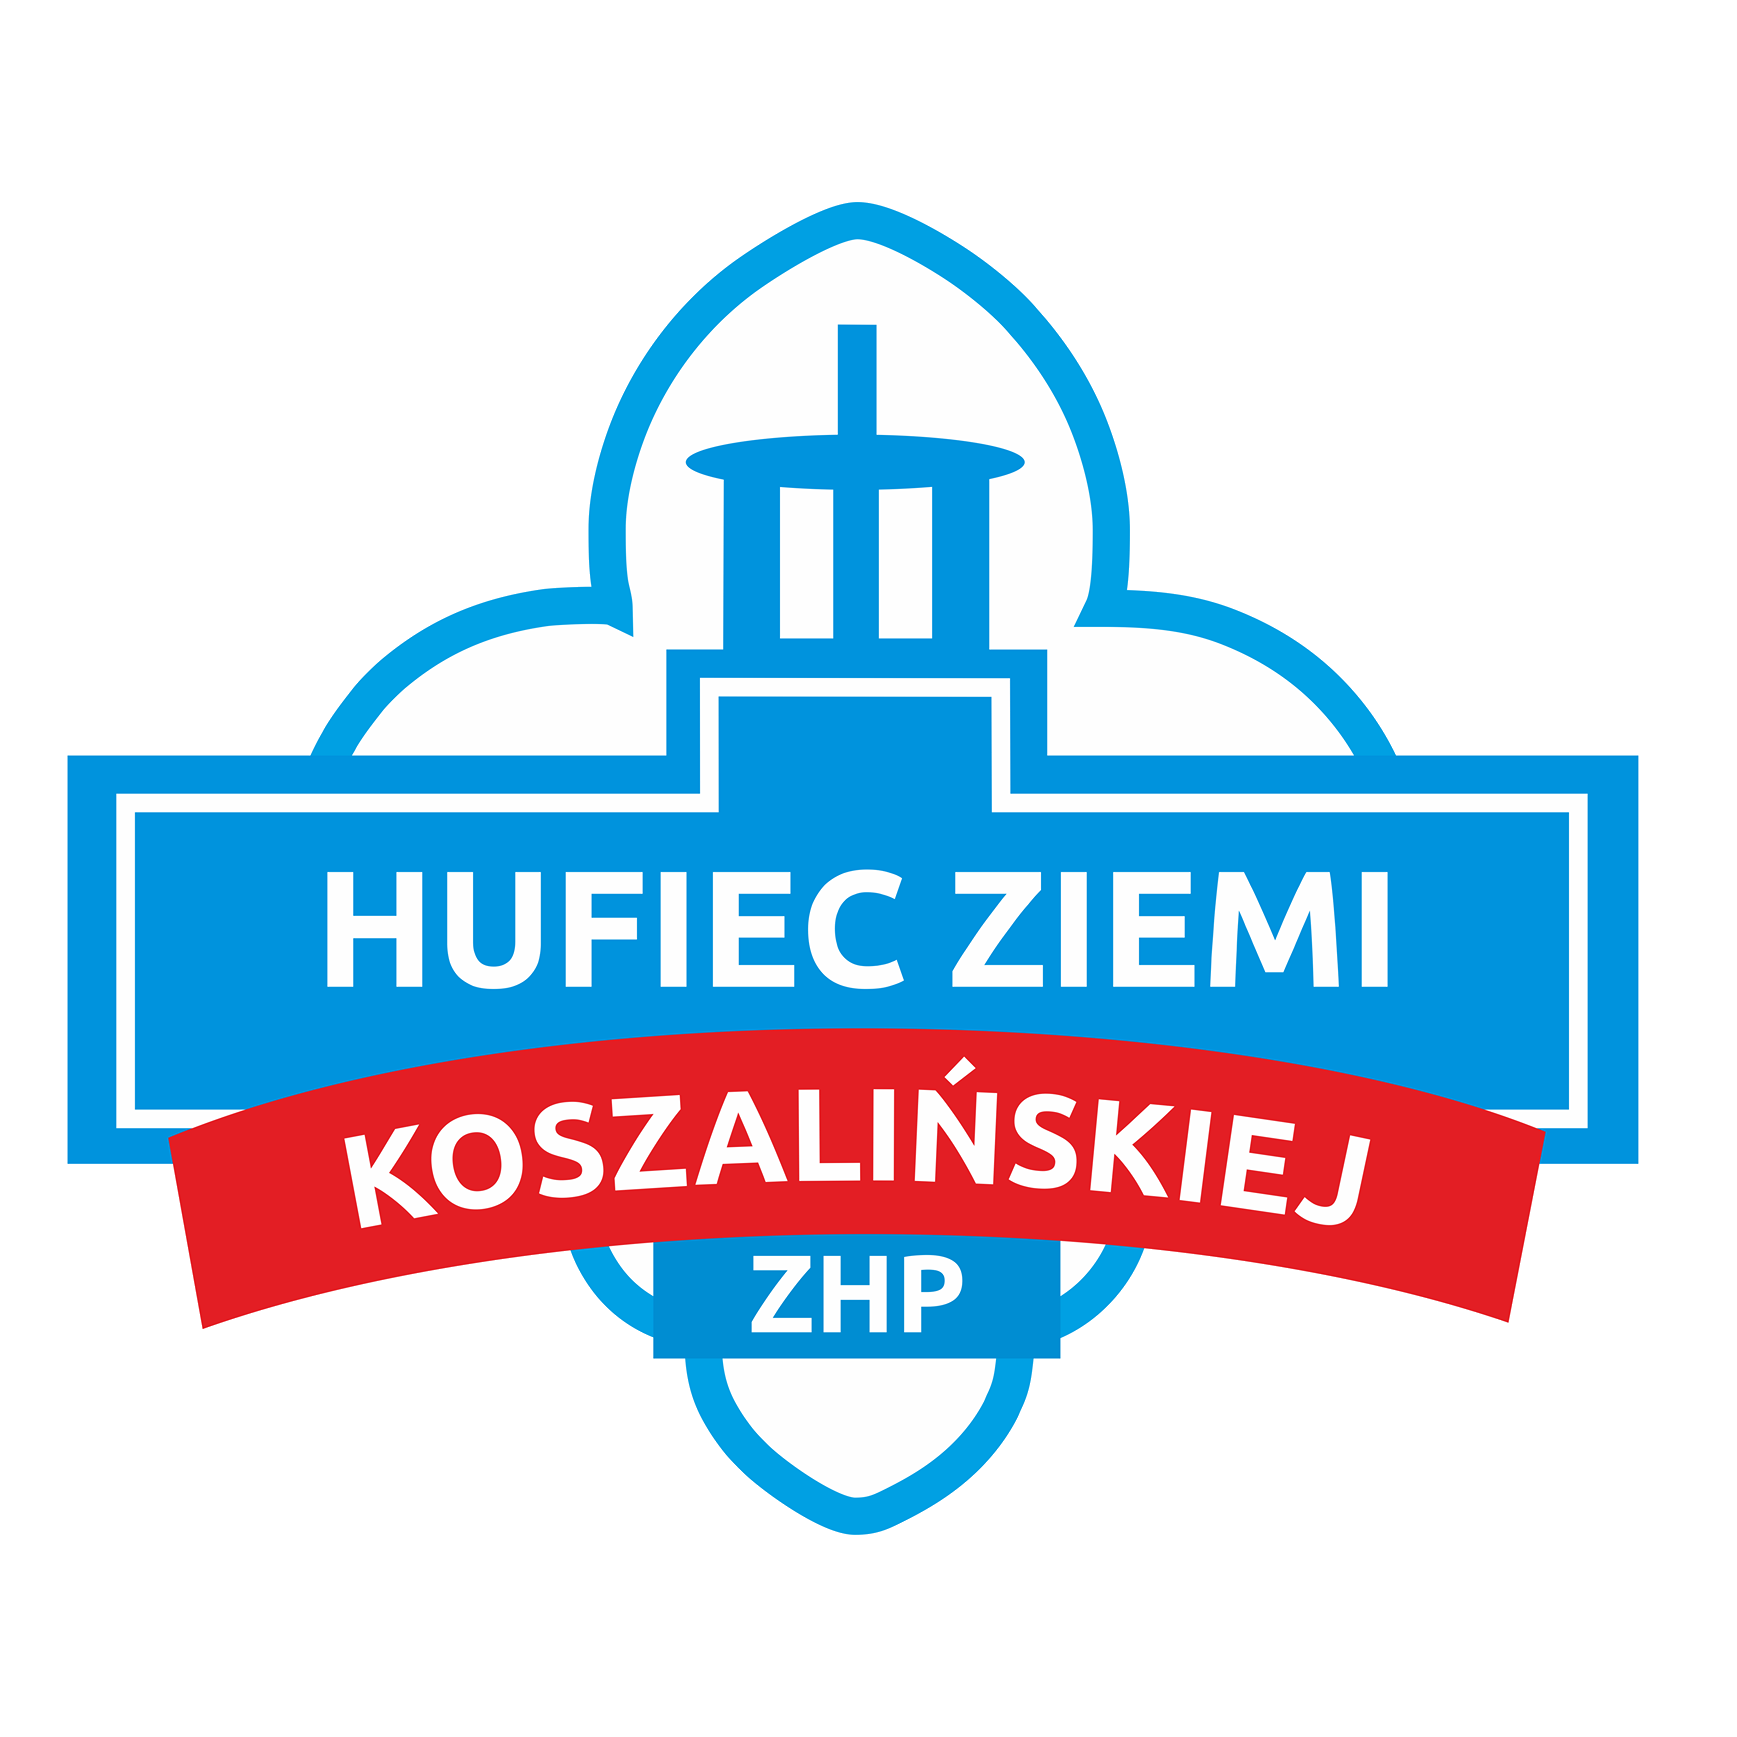 Logo Hufca ZIemii Koszalińskiej ZHP